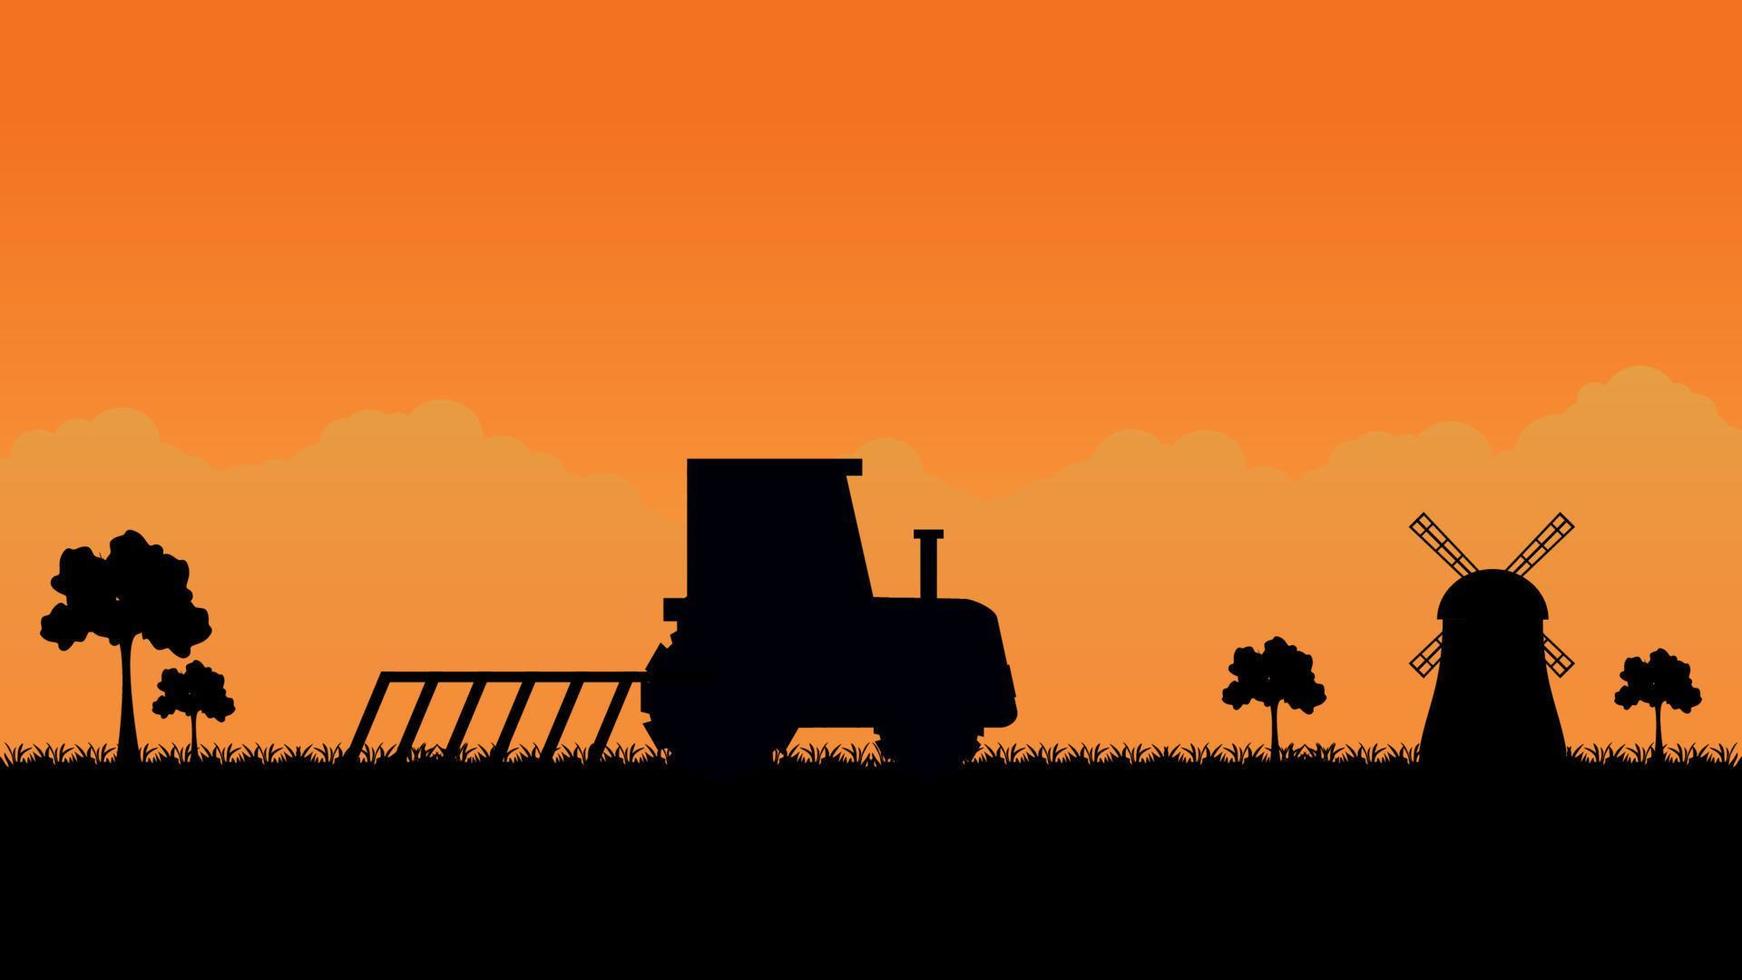 tracteur labourant le champ sur le paysage du village rural. vecteur